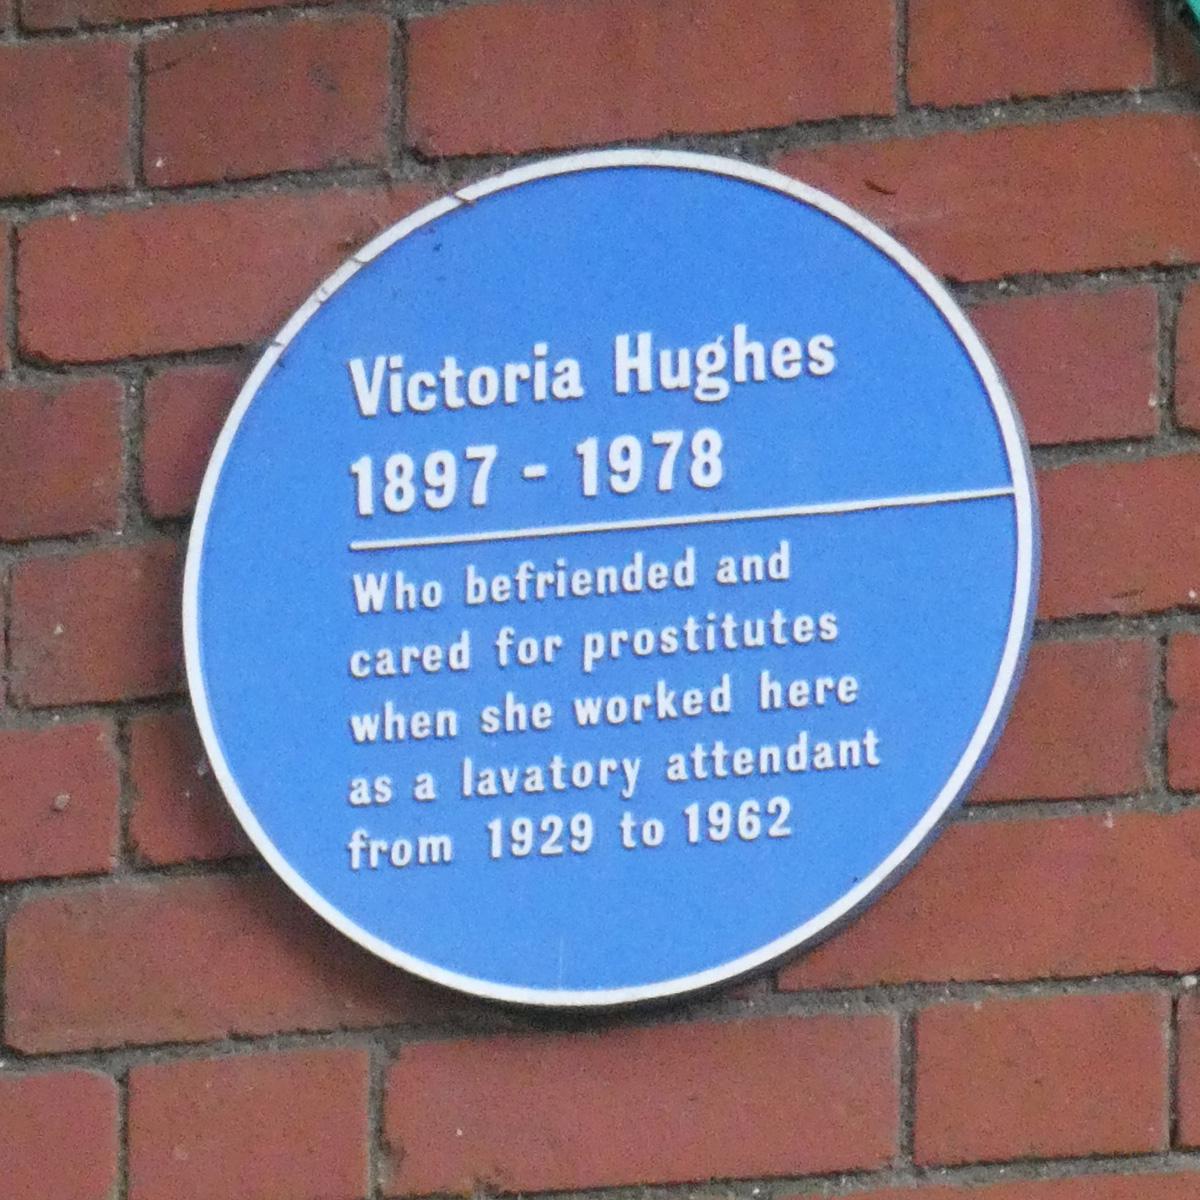 Victoria Hughes' blue plack